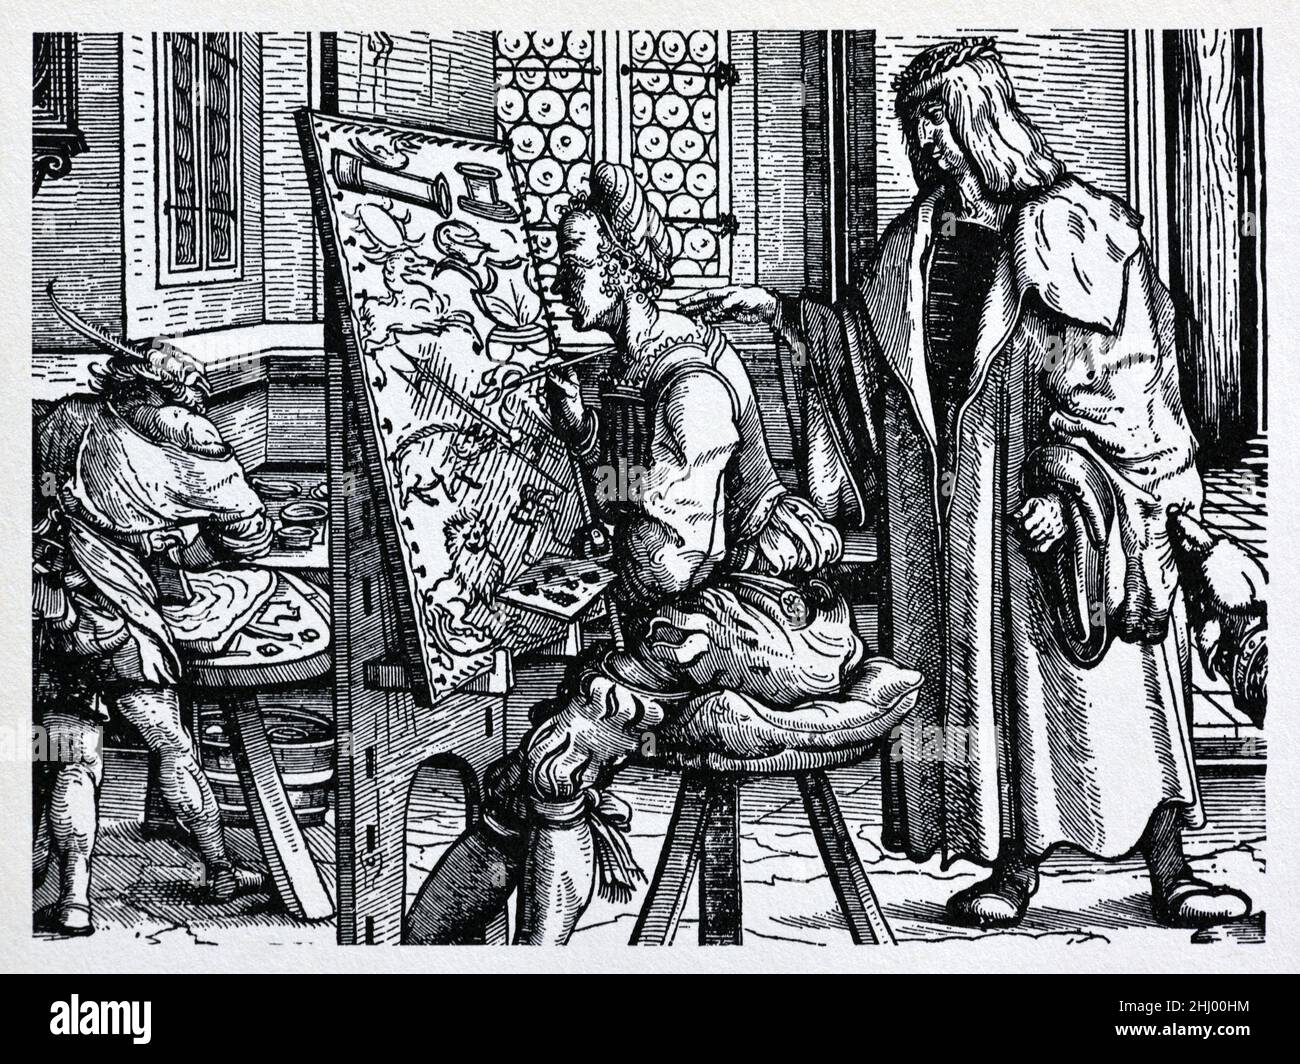 Coupe de bois 1514-1516 de Maximilien I (1459-1519), empereur romain, dans le Studio de Hans Burgkmaire l'ancien (1473-1531), artiste-peintre allemand et producteur de bois.L'image est apparue dans le roman chilvalrique incomplet Der Weisskunig ou The White Knight (1514-1516).Impression, gravure ou illustration de bois vintage c Bd. Banque D'Images